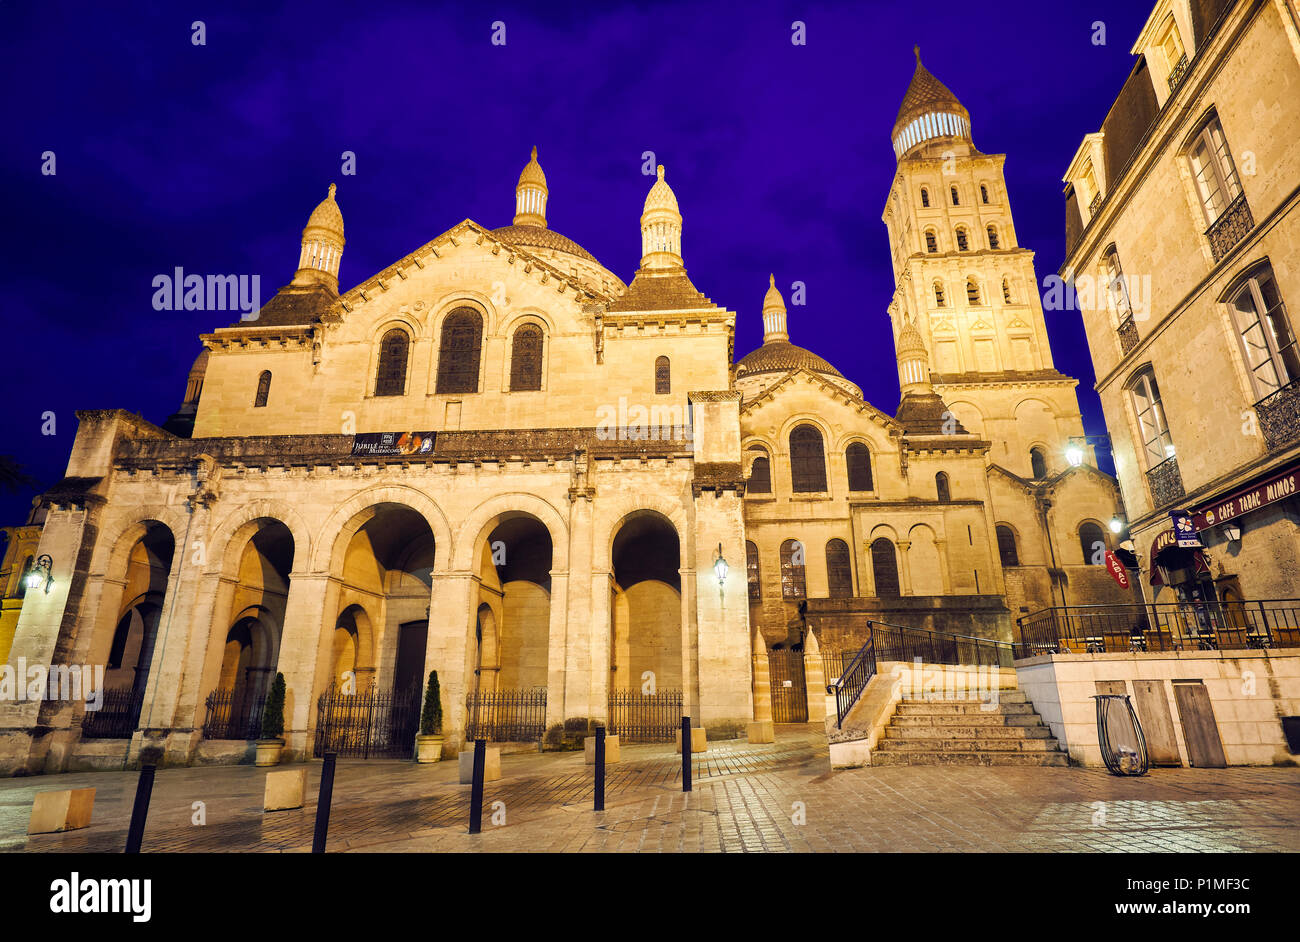 La catedral de Saint Front, parte de los sitios del Patrimonio Mundial de los Caminos de Santiago de Compostela. Perigueux. Dordogne. Nouvelle-Aquitaine. Francia. Foto de stock